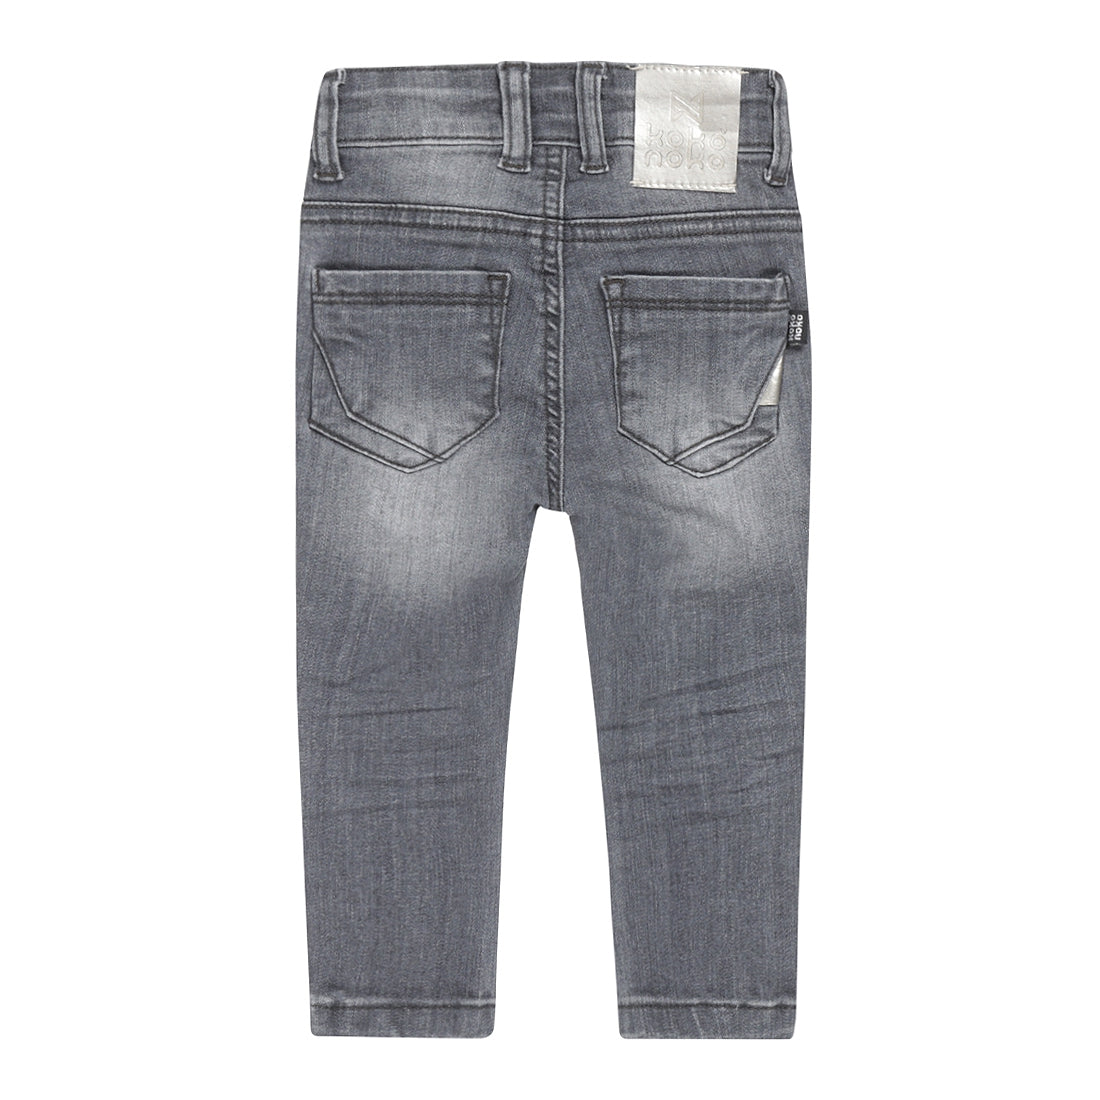 Meisjes Jeans skinny van Koko Noko in de kleur Grey jeans in maat 128.